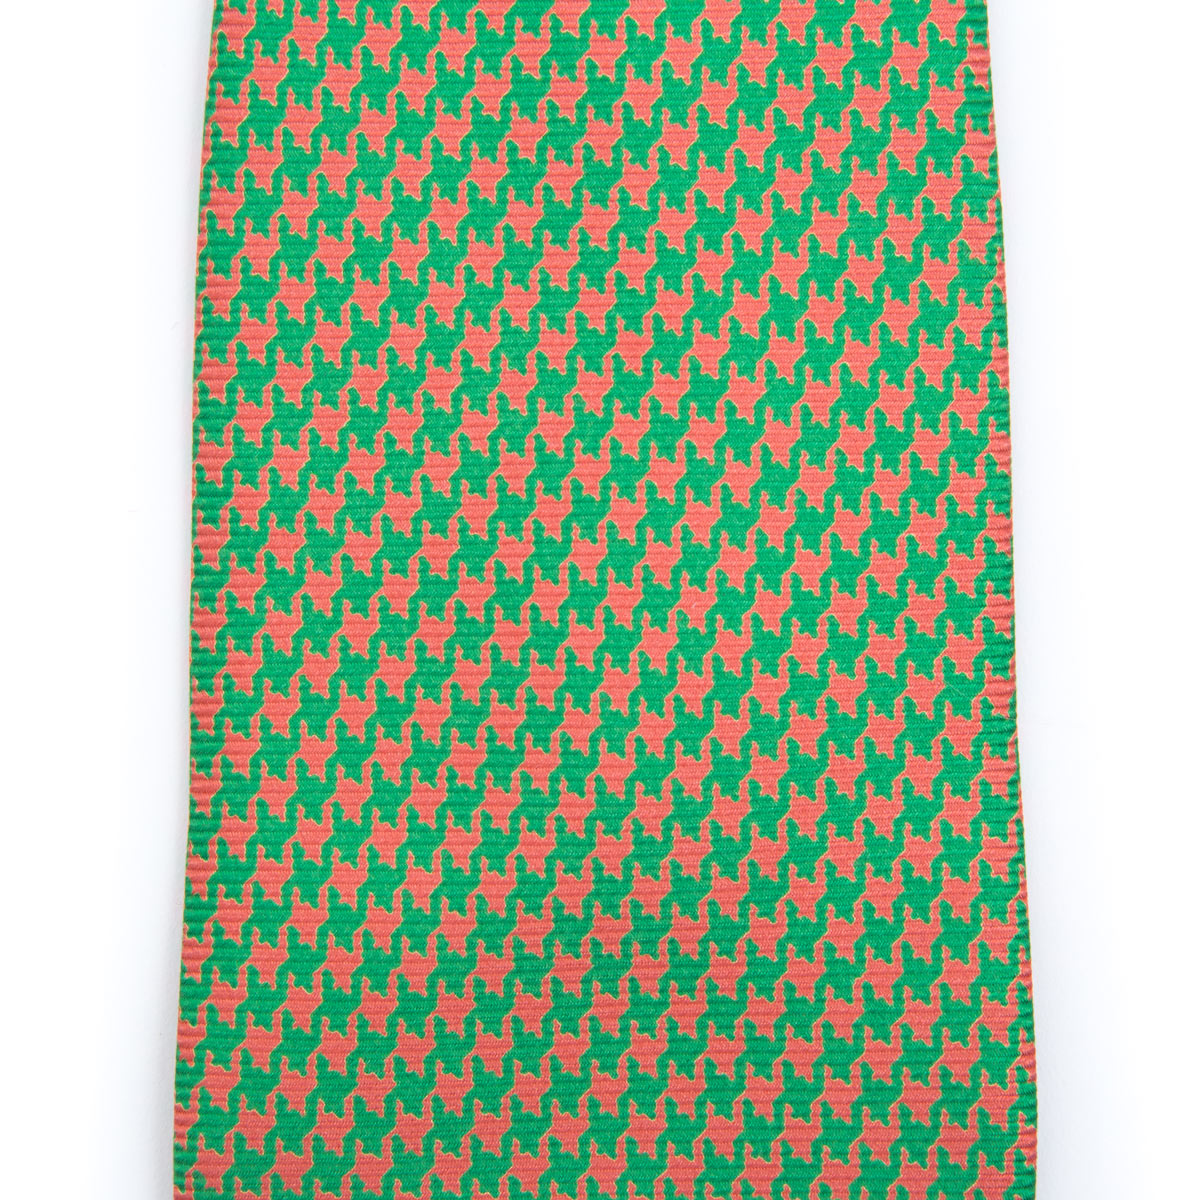 Neon fantasy tie